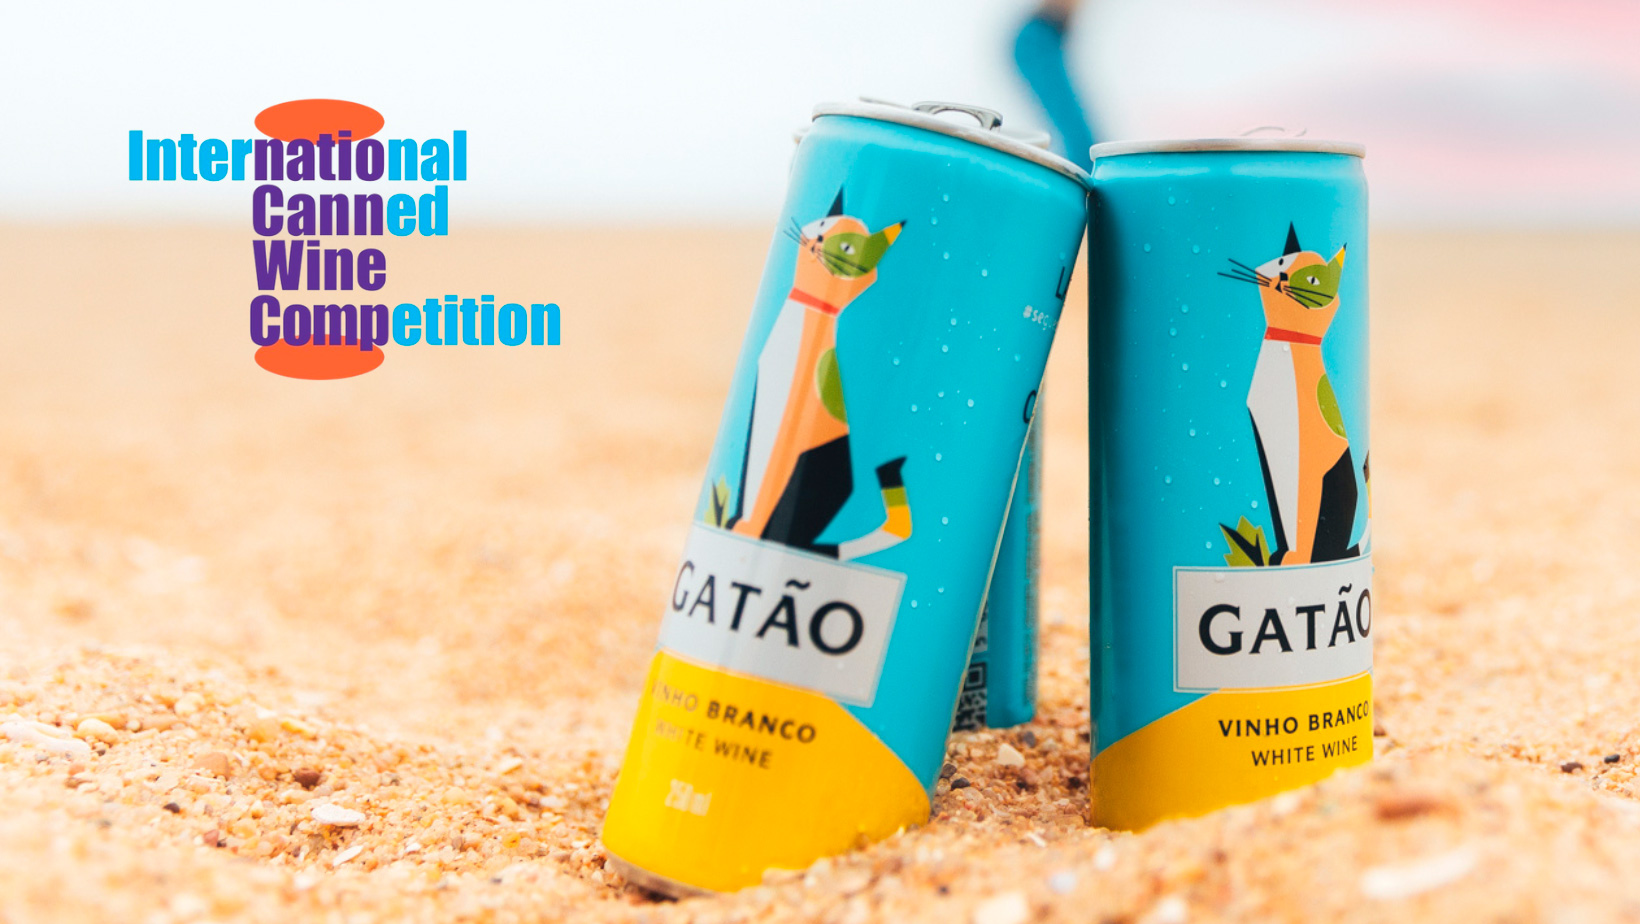 Depois de se estrear no International Canned Wine Competition em 2021, o Gatão voltou a fazer sucesso na edição deste ano com o prémio ‘Package Design Award’.